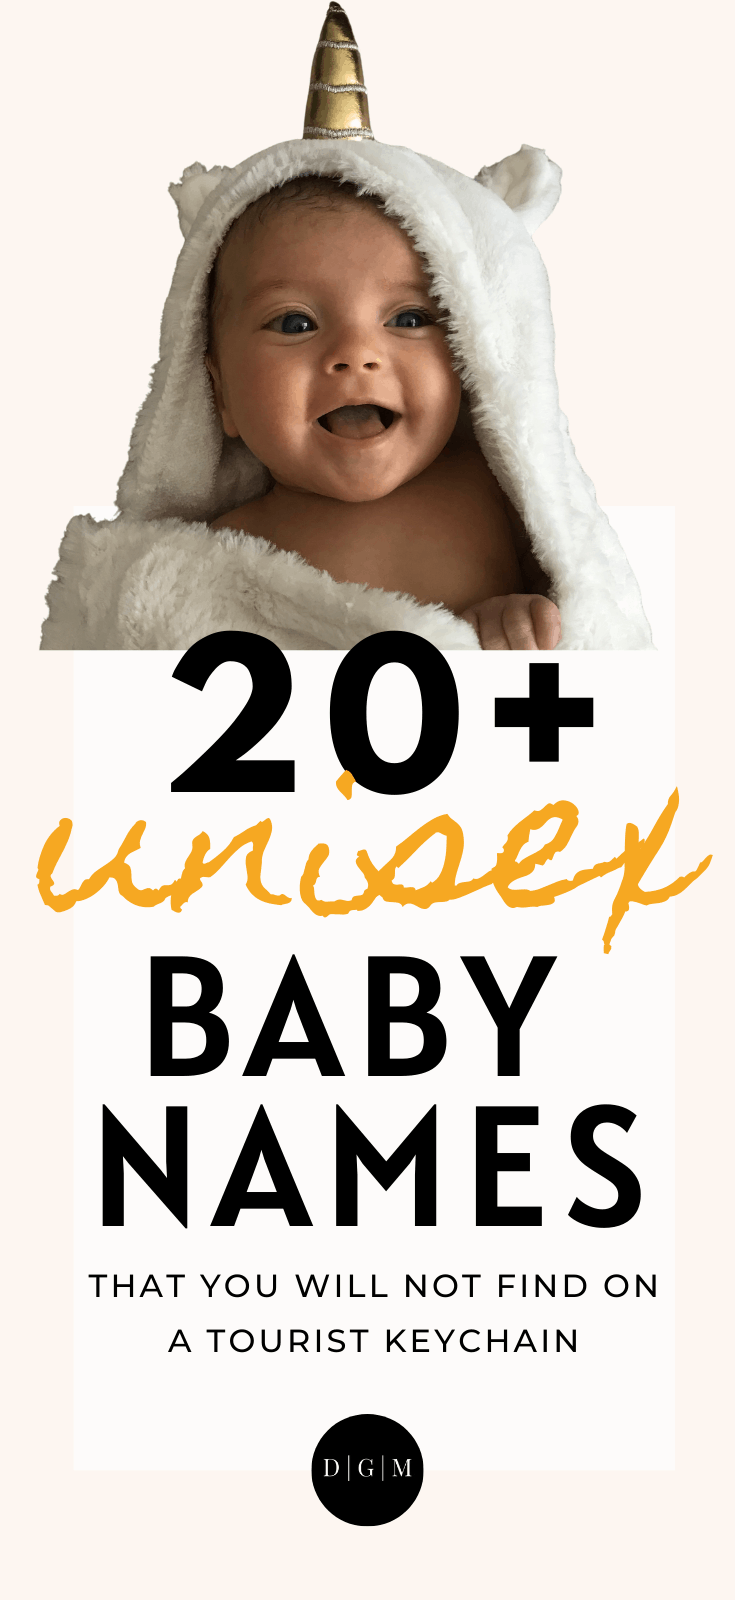 unisex baby names